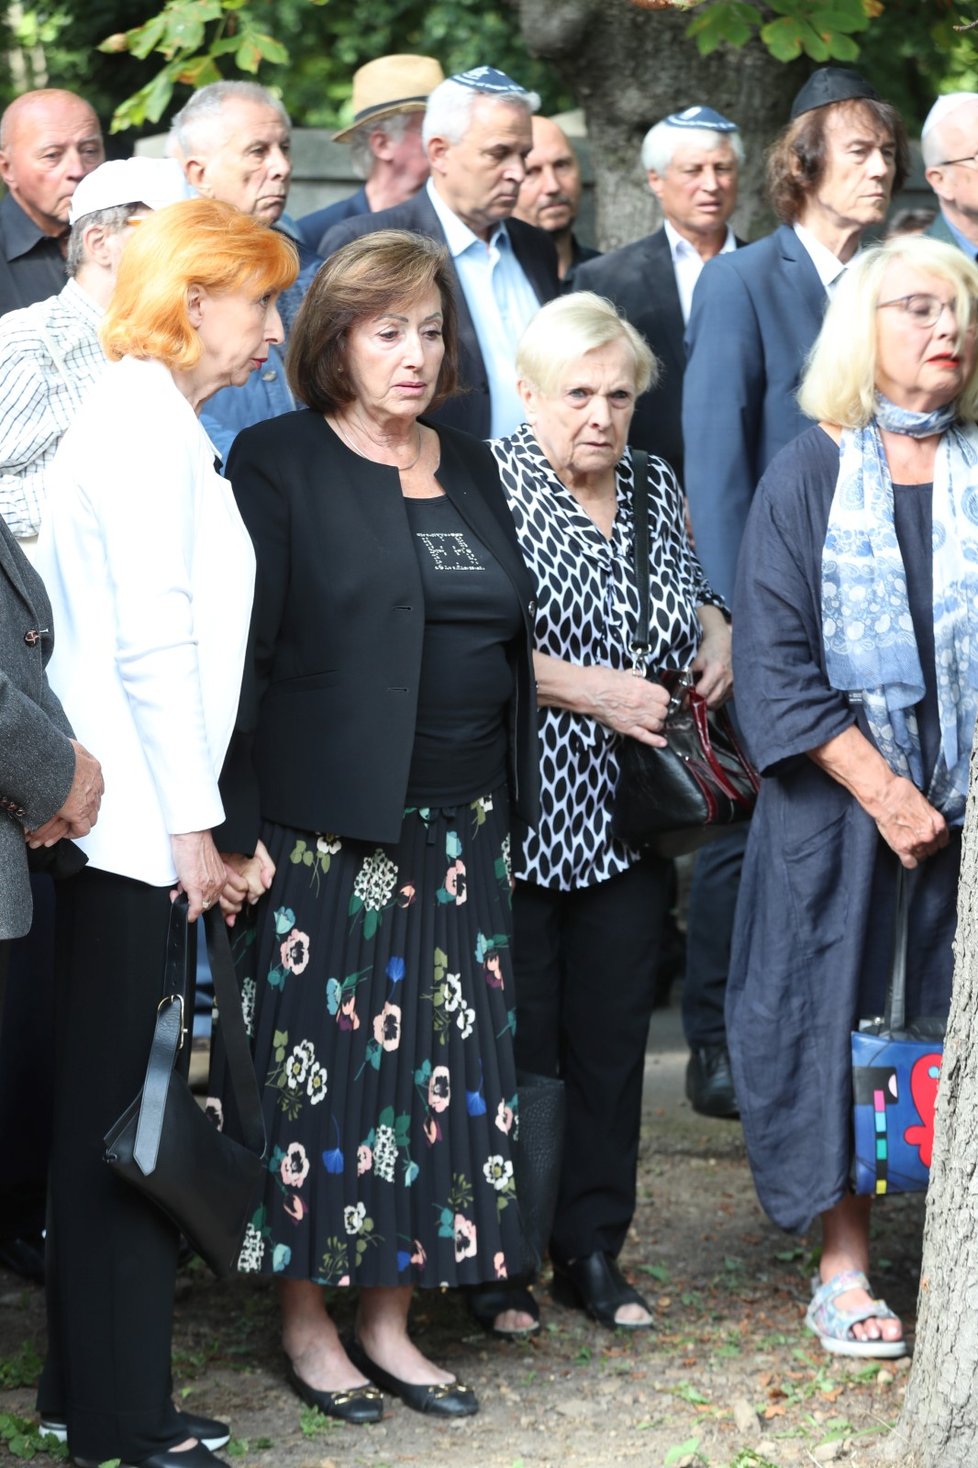 Pohřeb Yvonne Přenosilové